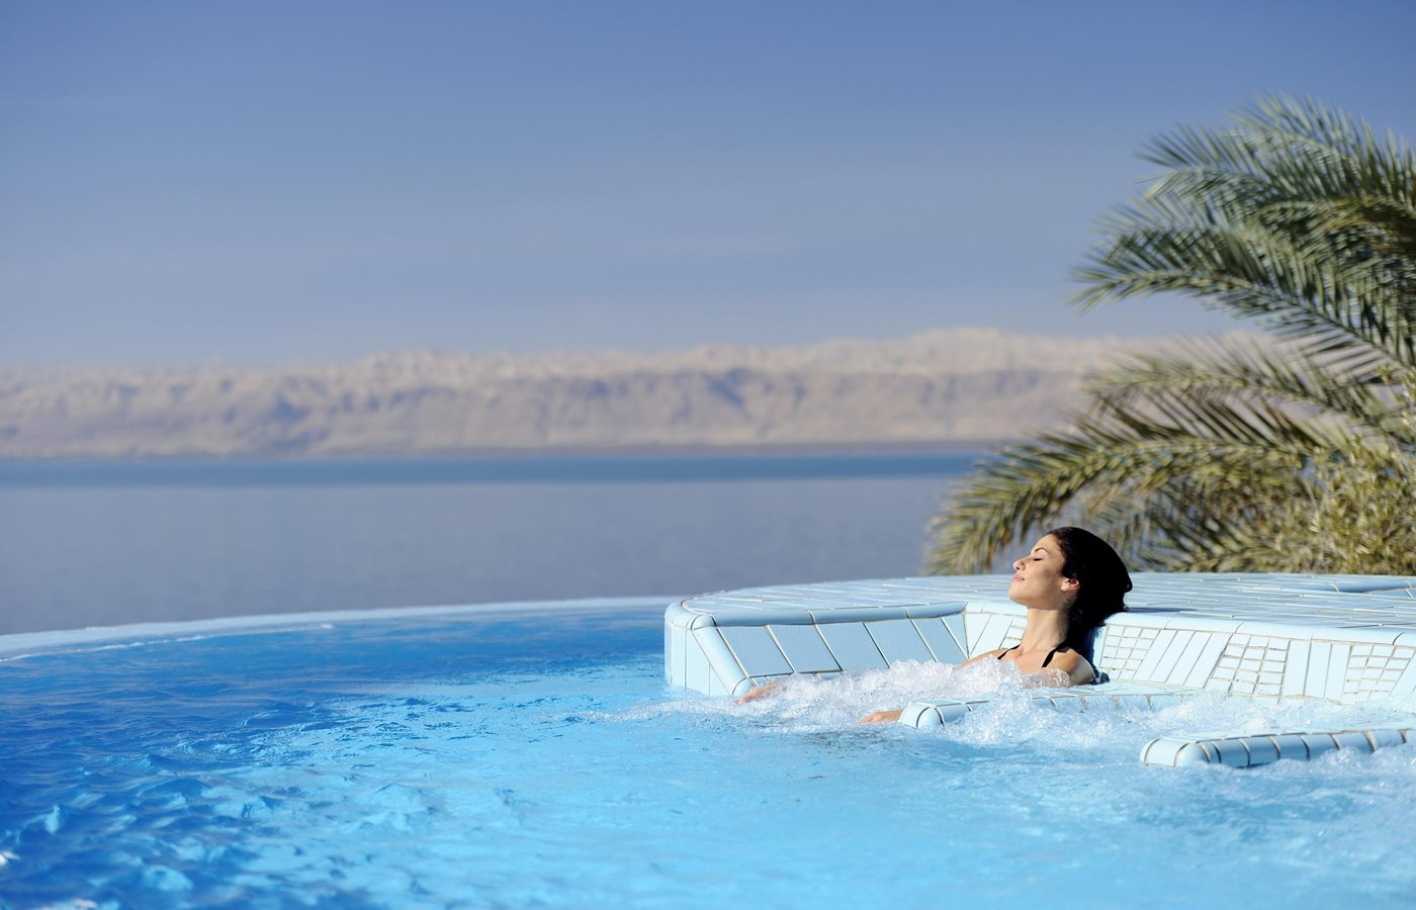 Лучшие курорты Мертвого моря в Израиле - особенности отдыха, погода, достопримечательности, отели, цены Что интересного посмотреть туристу